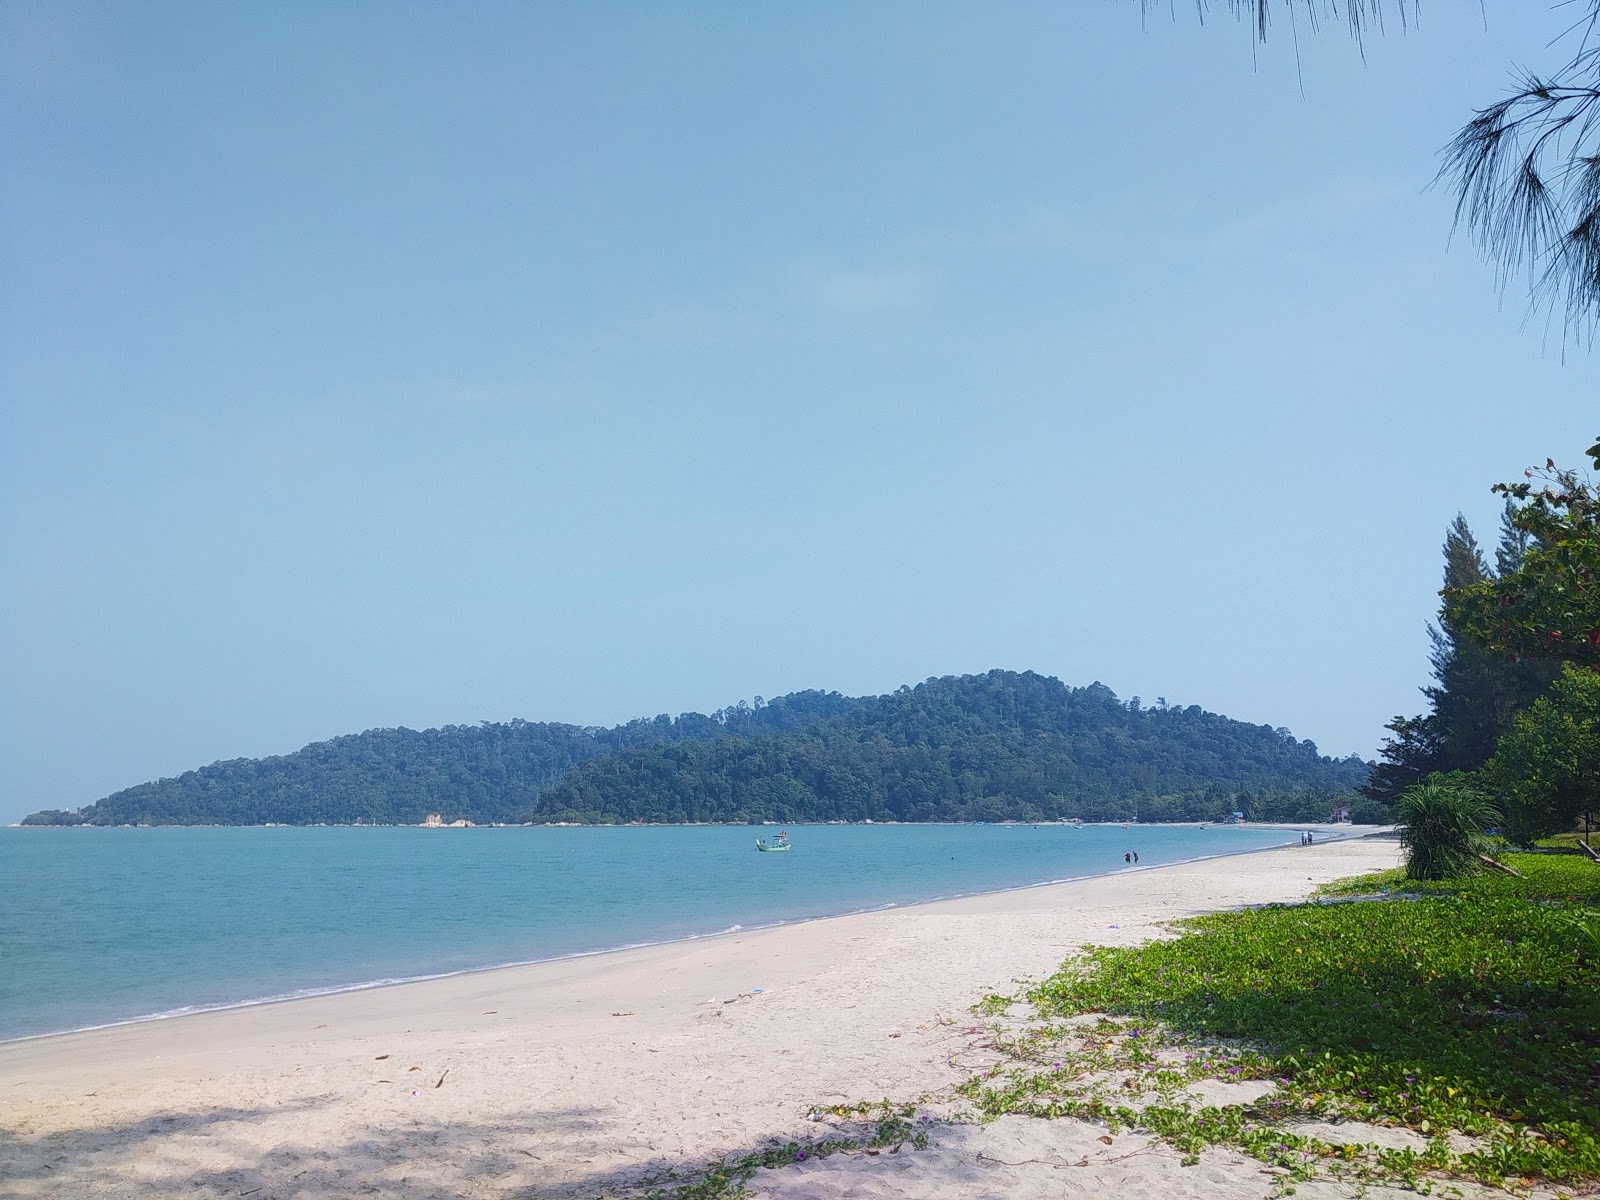 Zdjęcie Teluk Senangin Beach - popularne miejsce wśród znawców relaksu